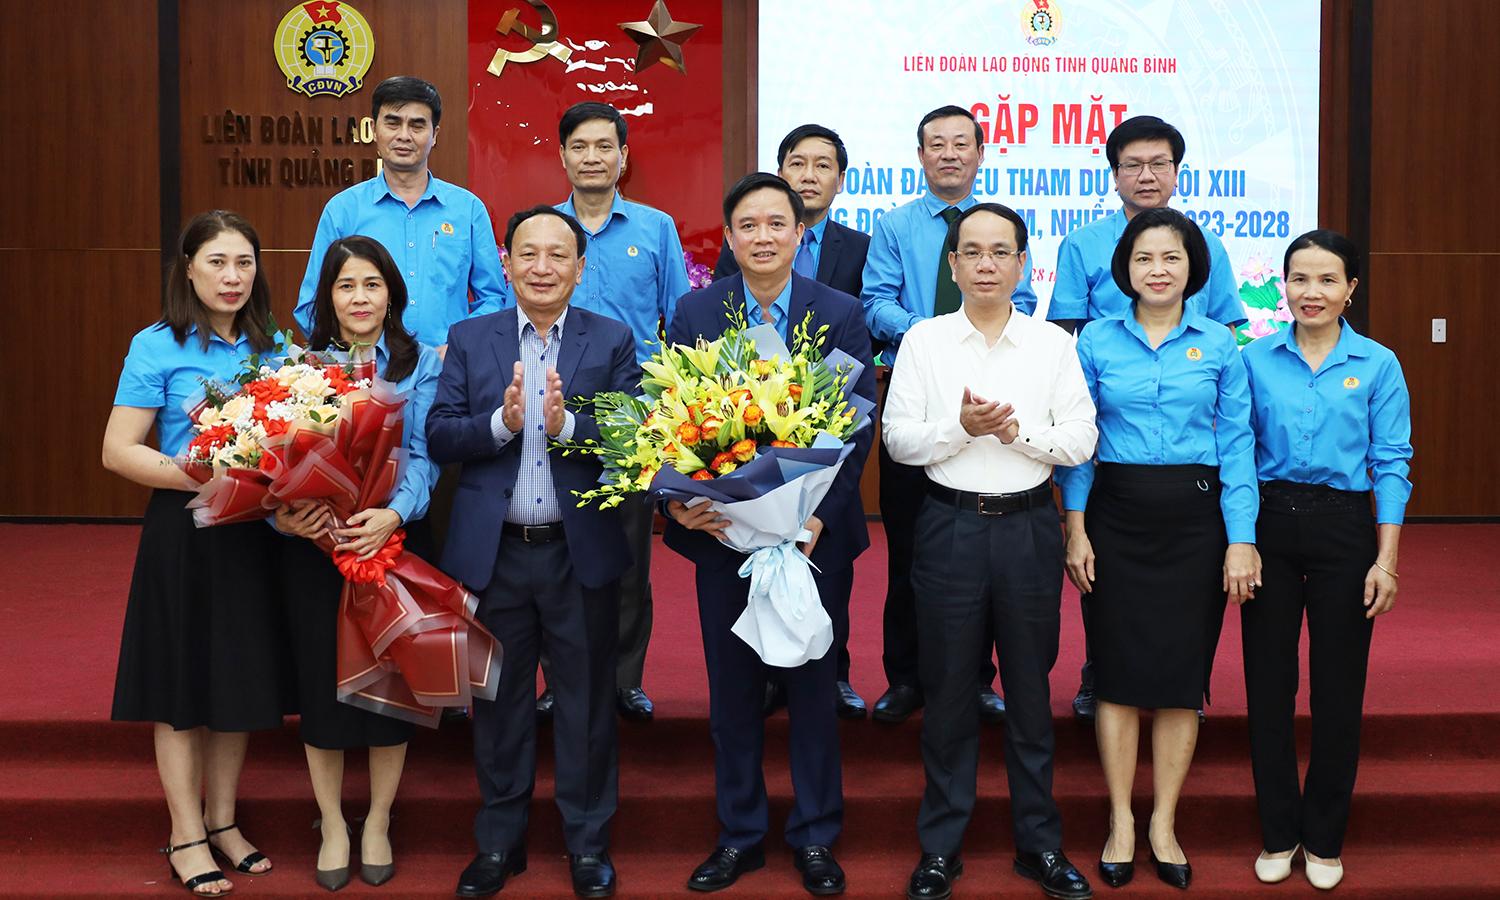 Gặp mặt đoàn đại biểu dự Đại hội Công đoàn Việt Nam